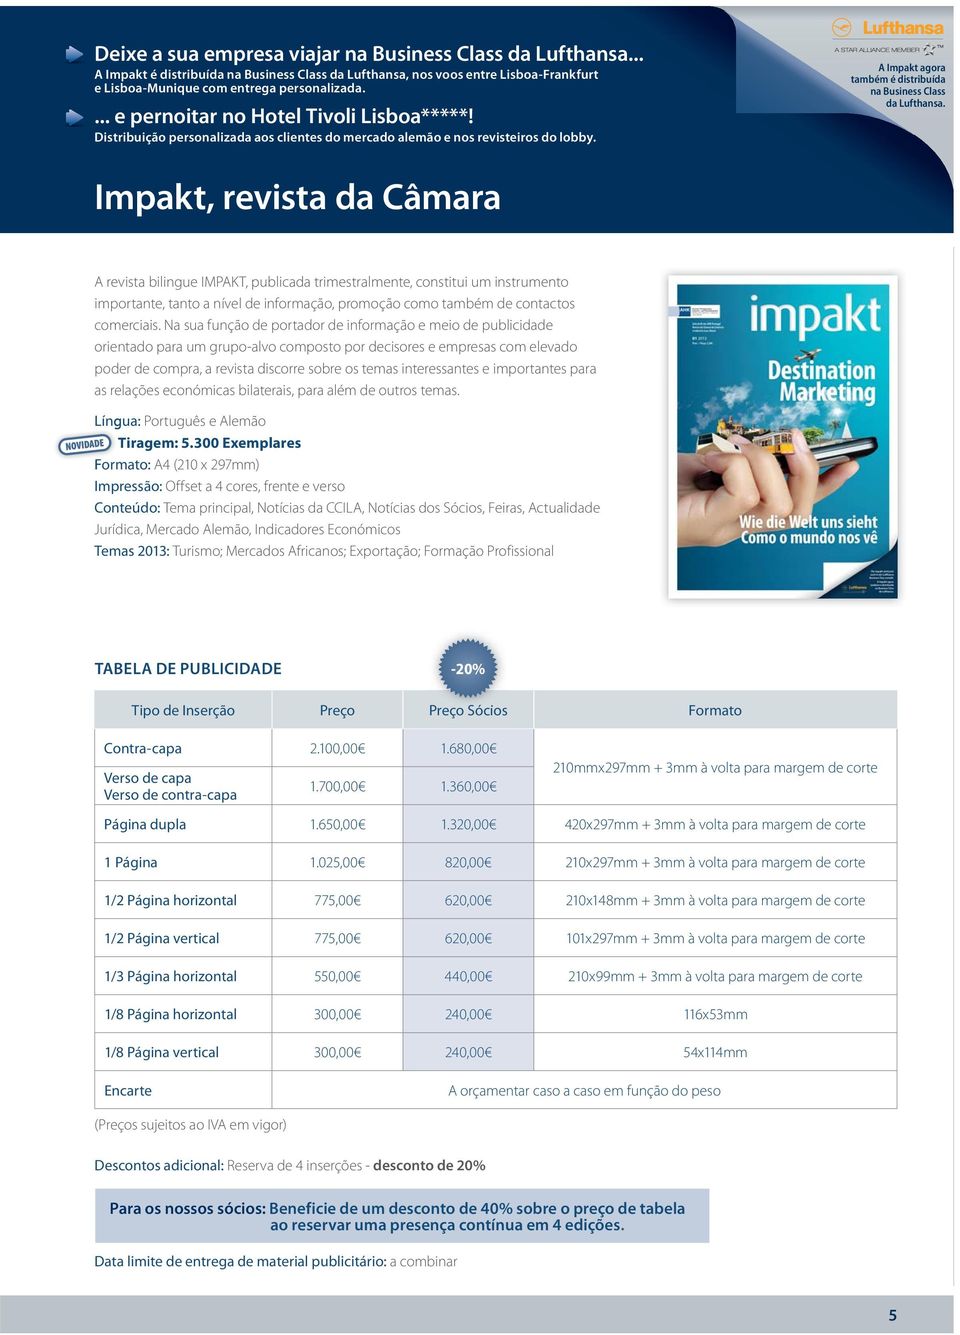 Impakt, revista da Câmara A revista bilingue IMPAKT, publicada trimestralmente, constitui um instrumento importante, tanto a nível de informação, promoção como também de contactos comerciais.